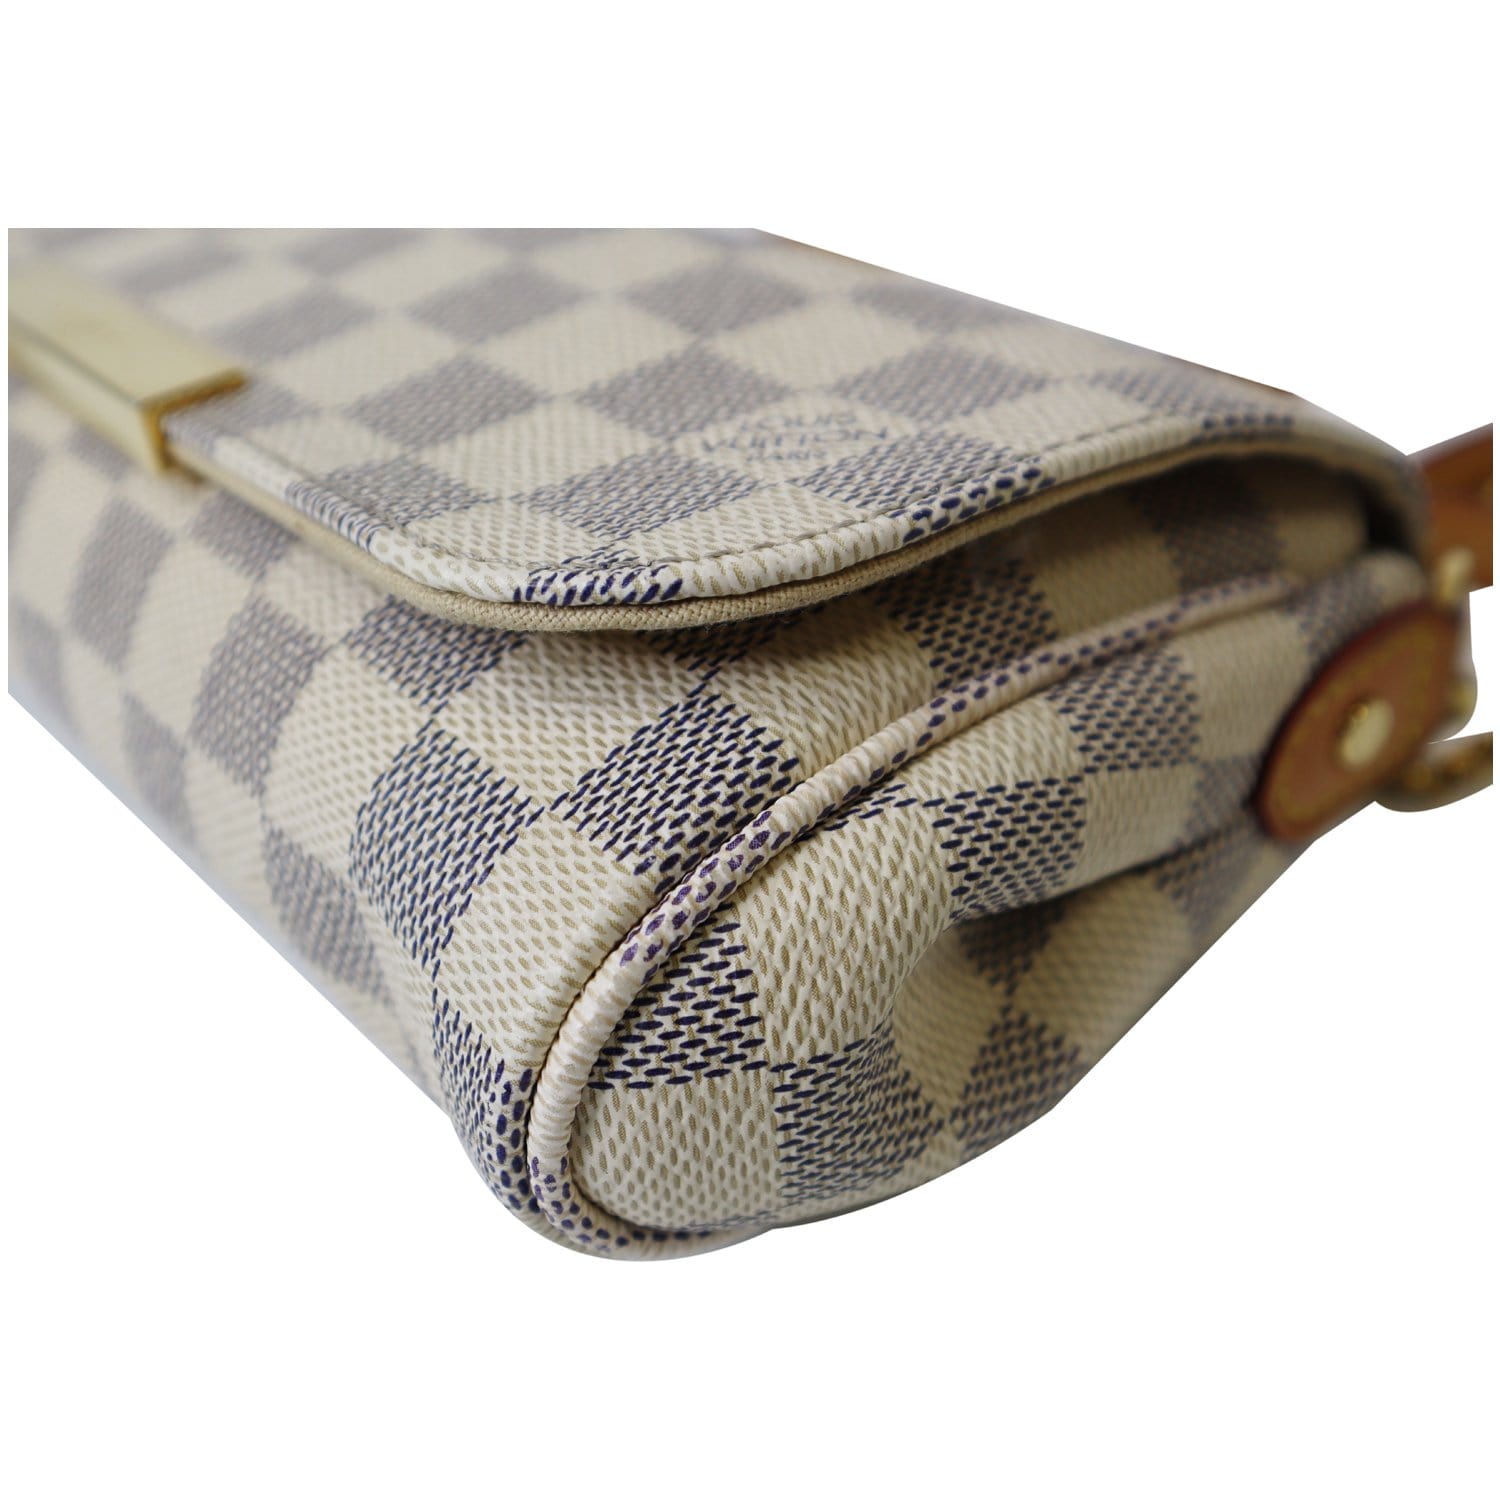 hold - Favorite PM Damier Azur – Keeks Designer Handbags